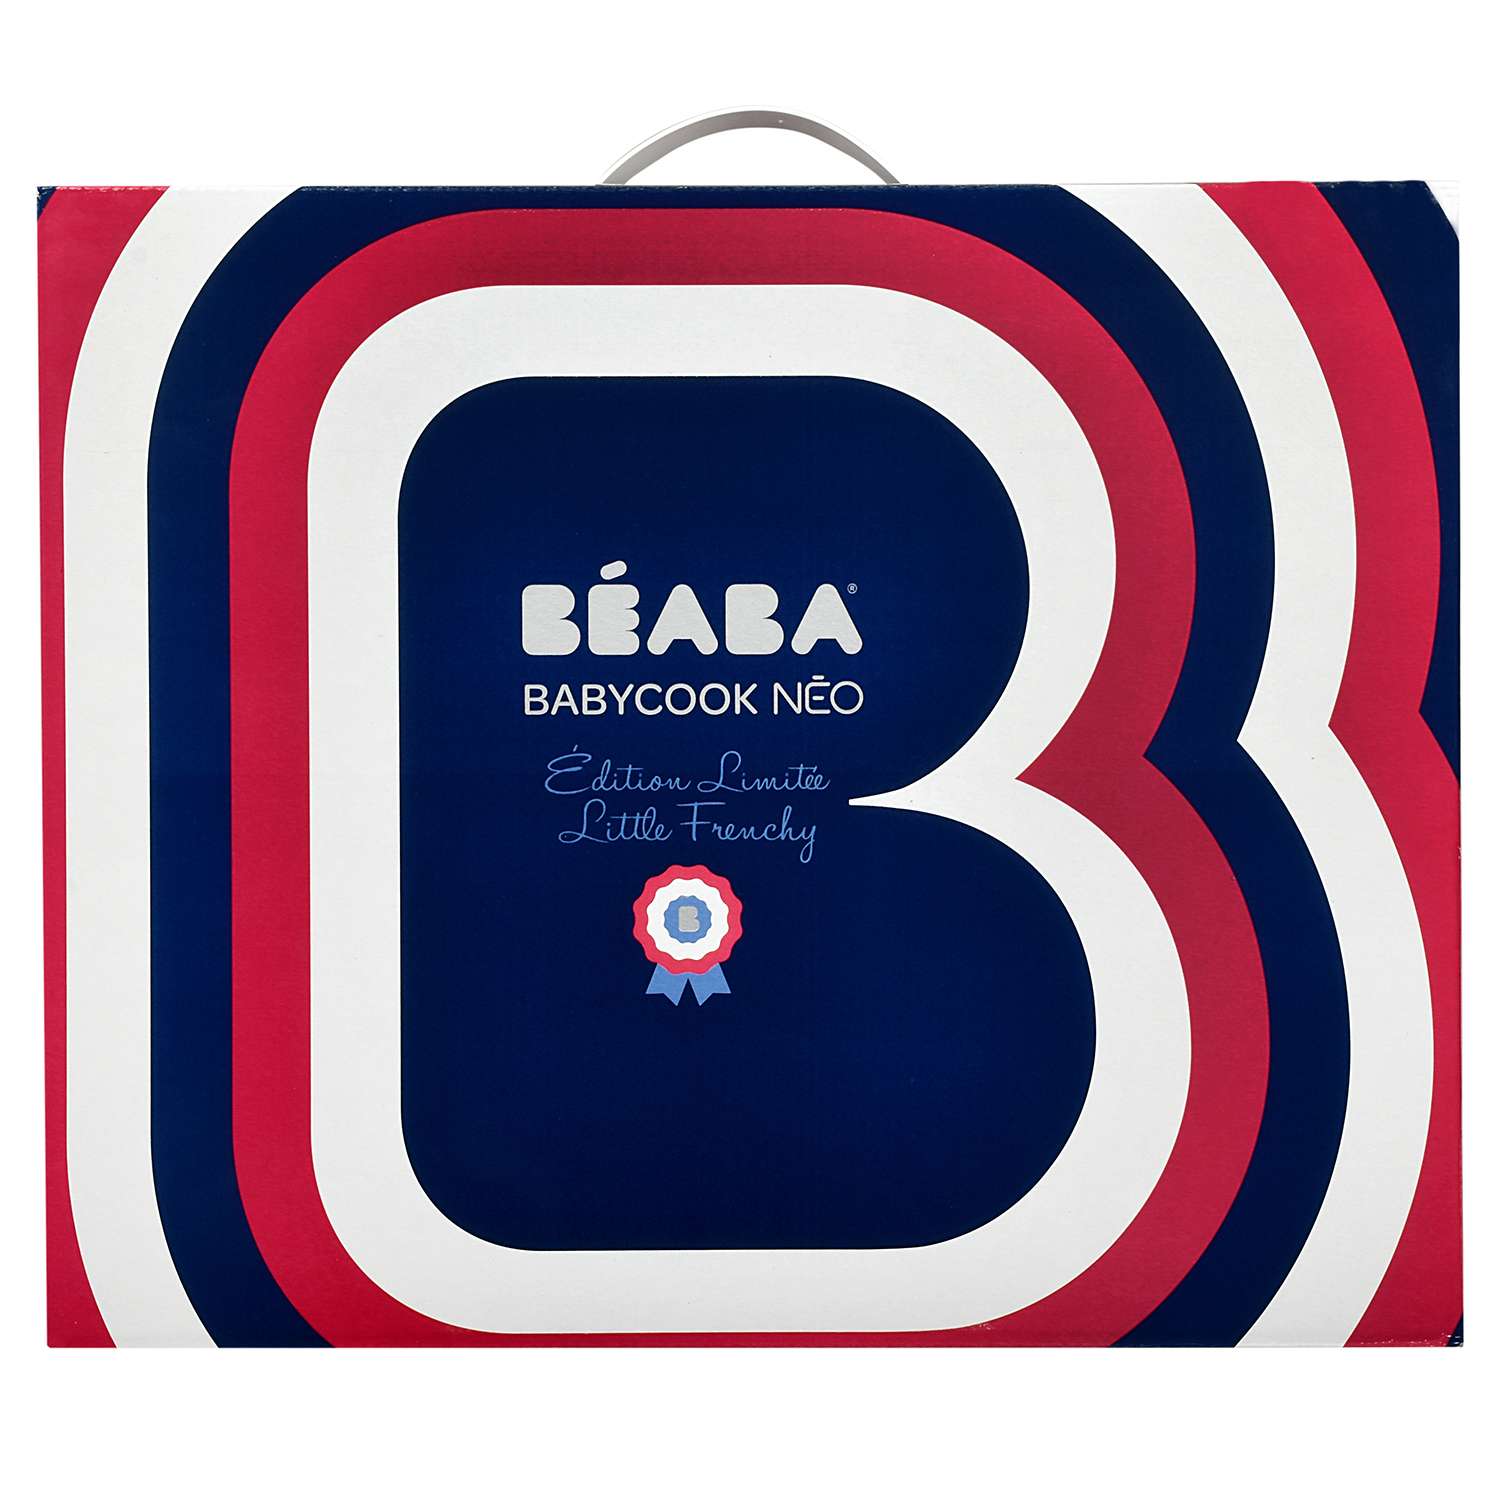 Пароварка-блендер BEABA Babycook Neo со стеклянной чашей Синий-Красный - фото 2